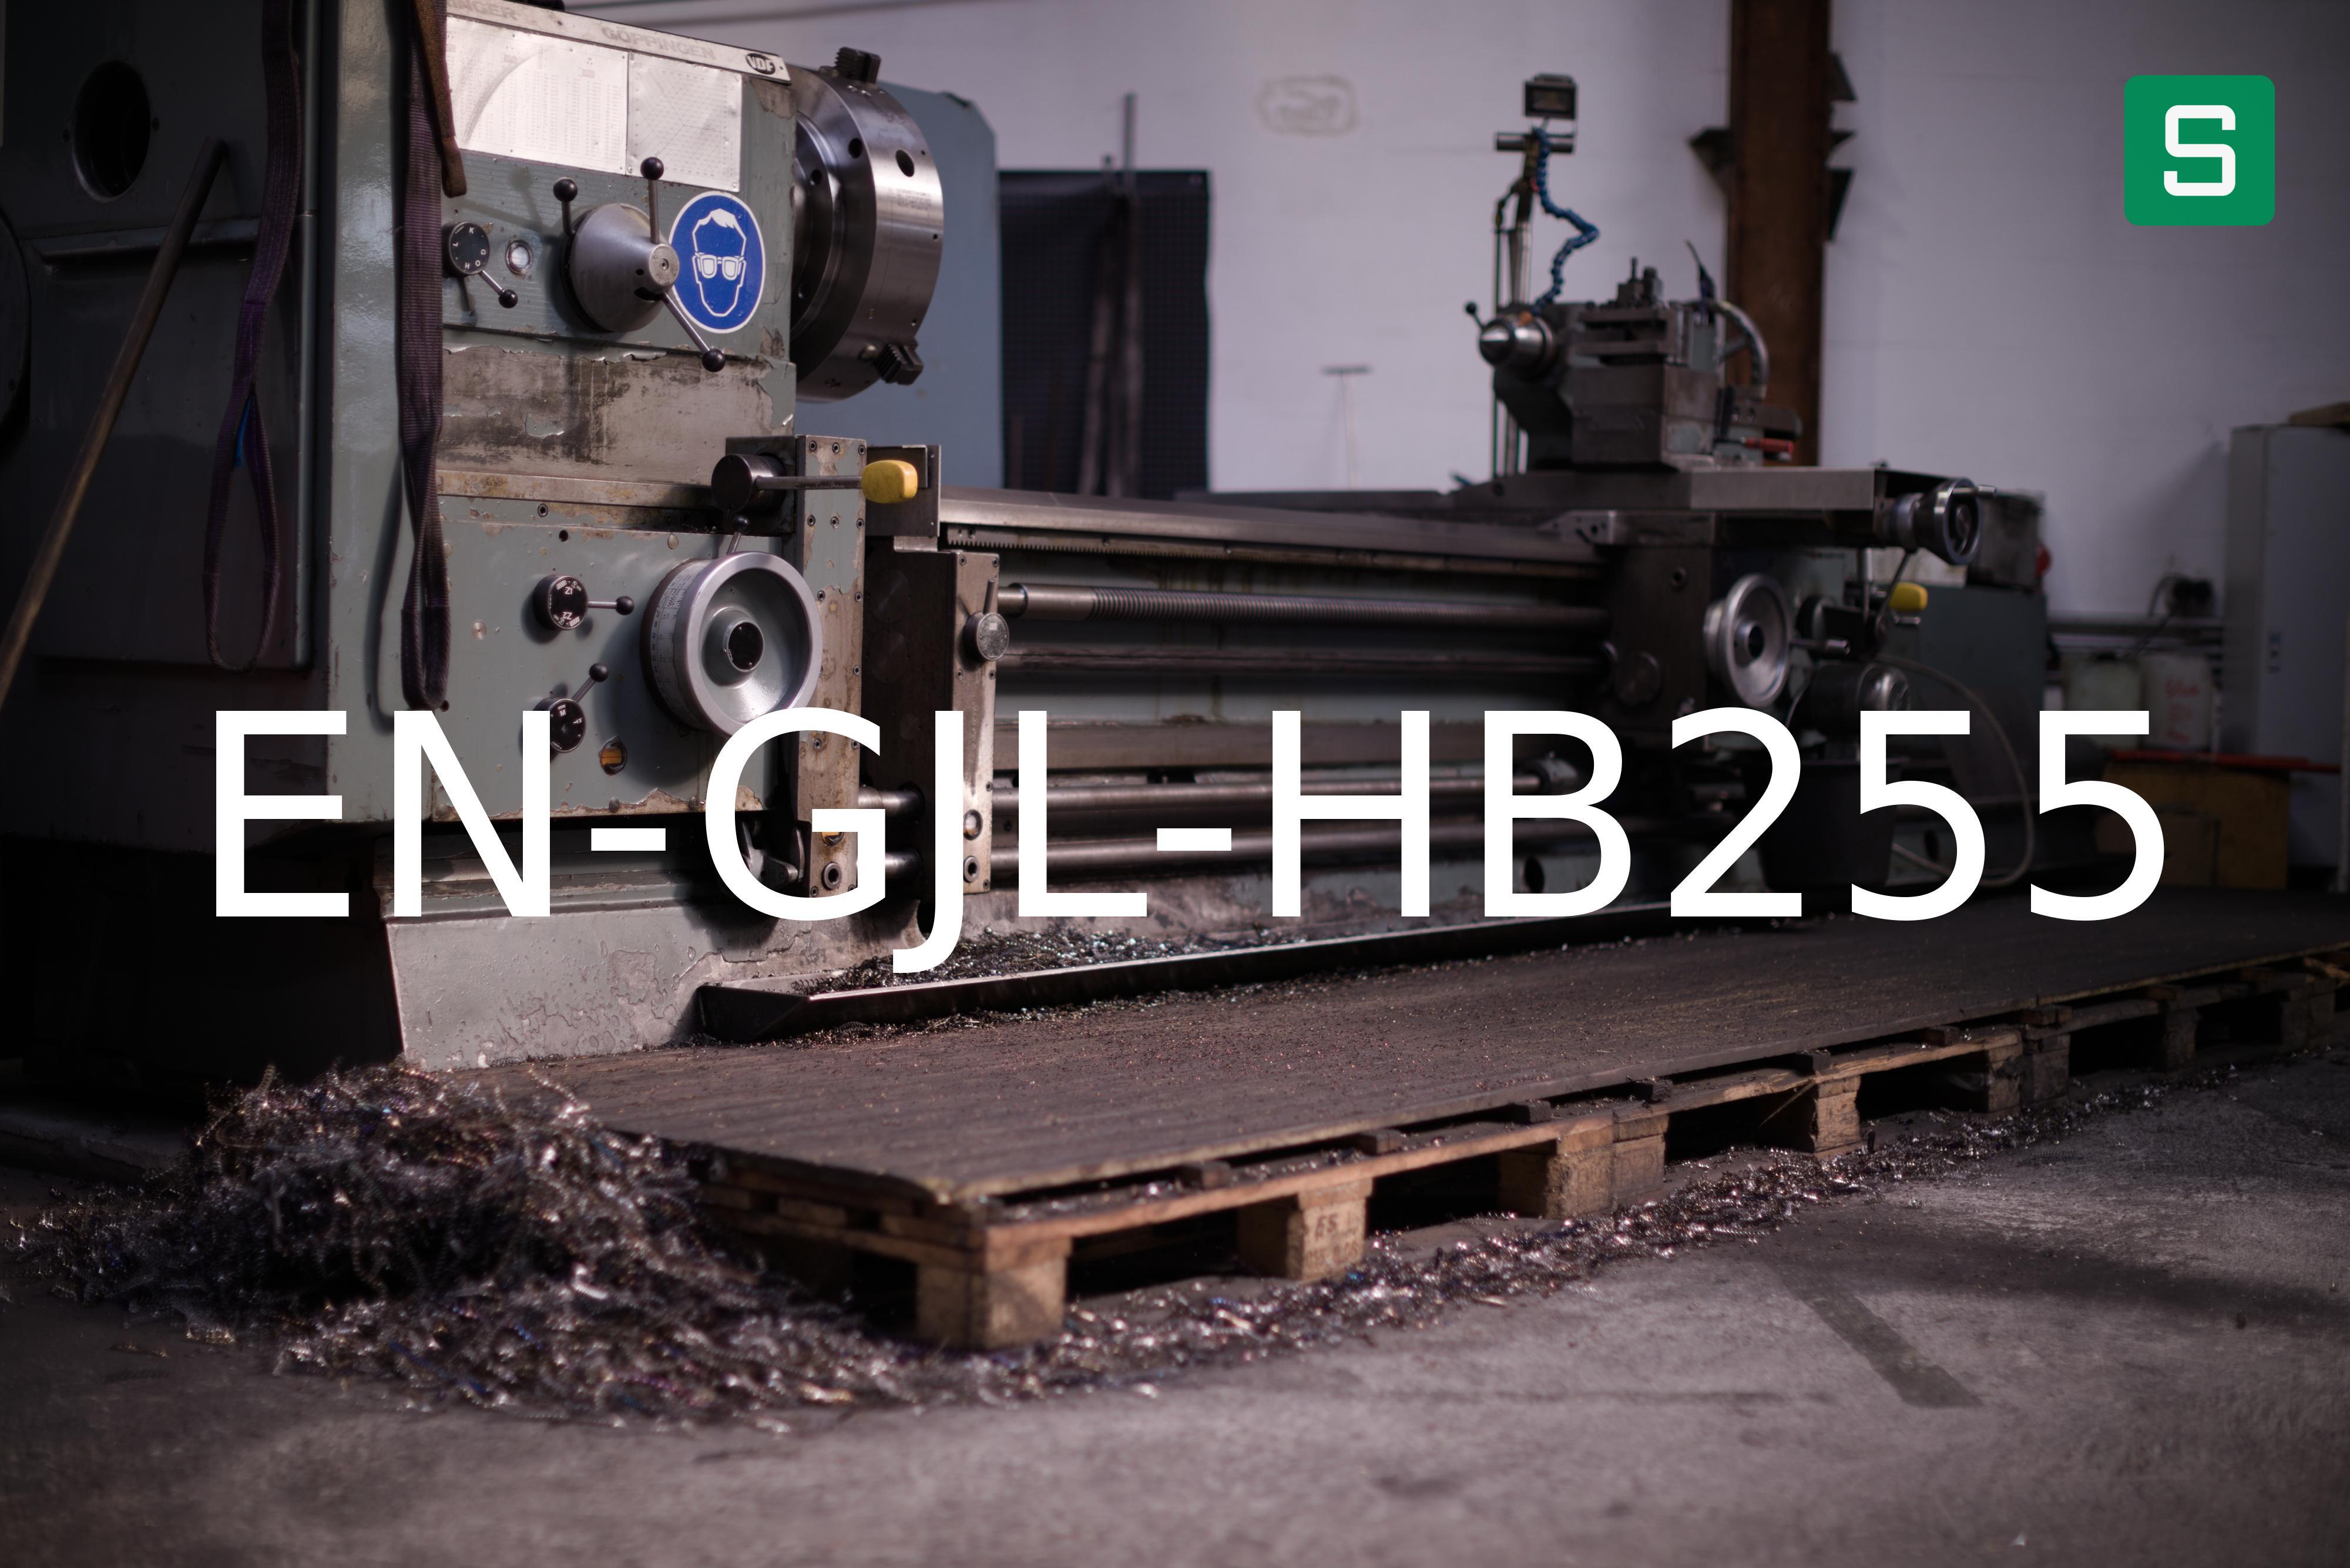 Steel Material: EN-GJL-HB255